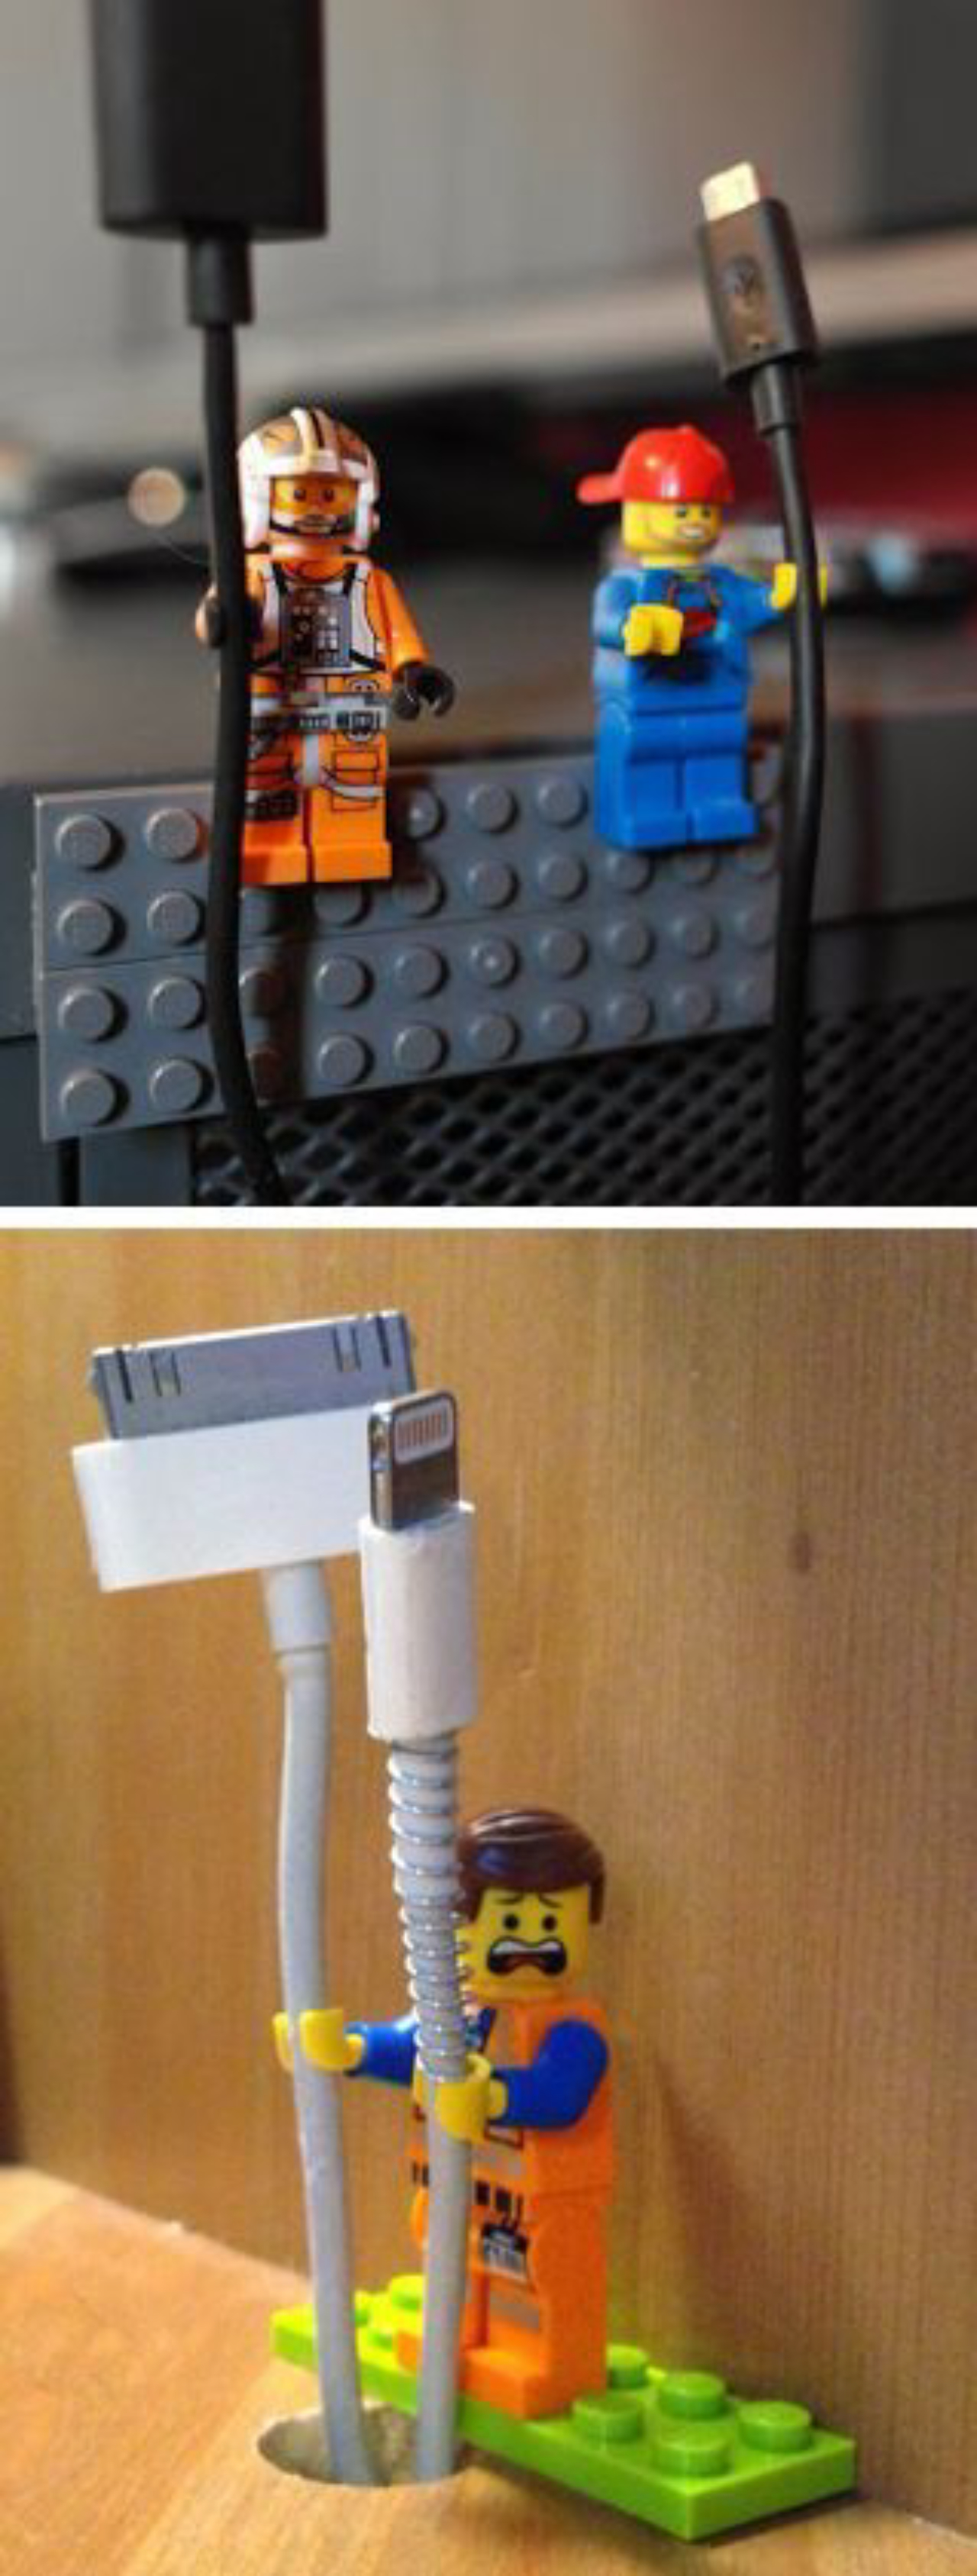 Aqui os bonequinhos do Lego seguram cabos USB.